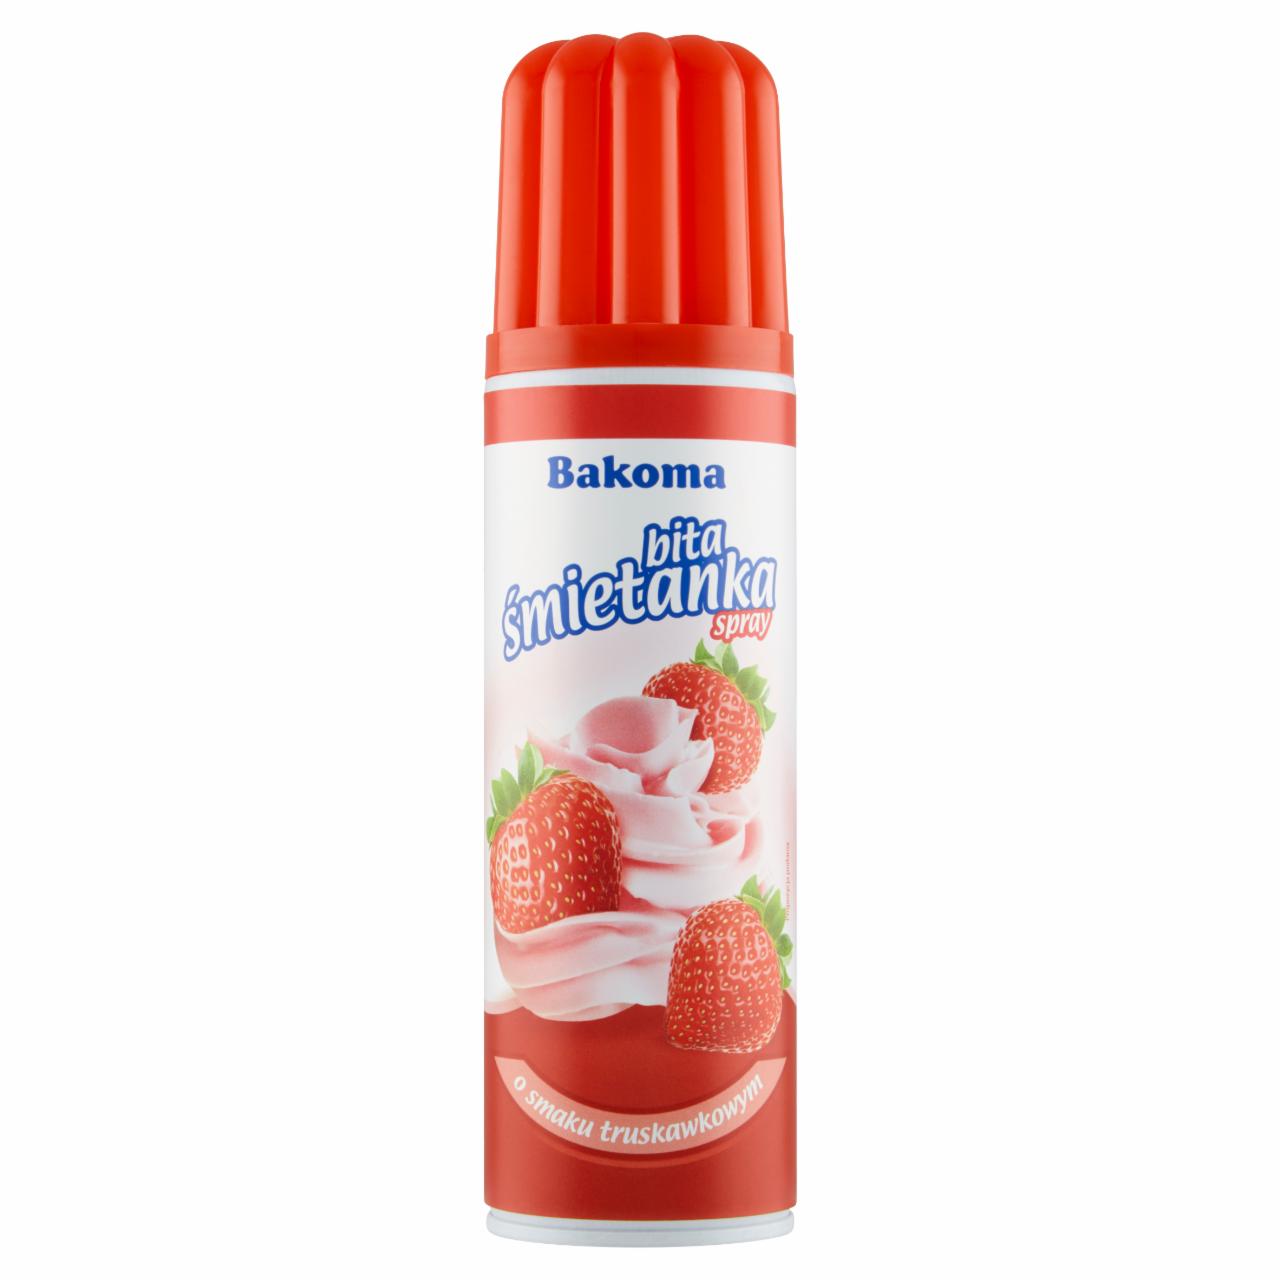 Zdjęcia - Bakoma Bita śmietanka spray o smaku truskawkowym 250 g